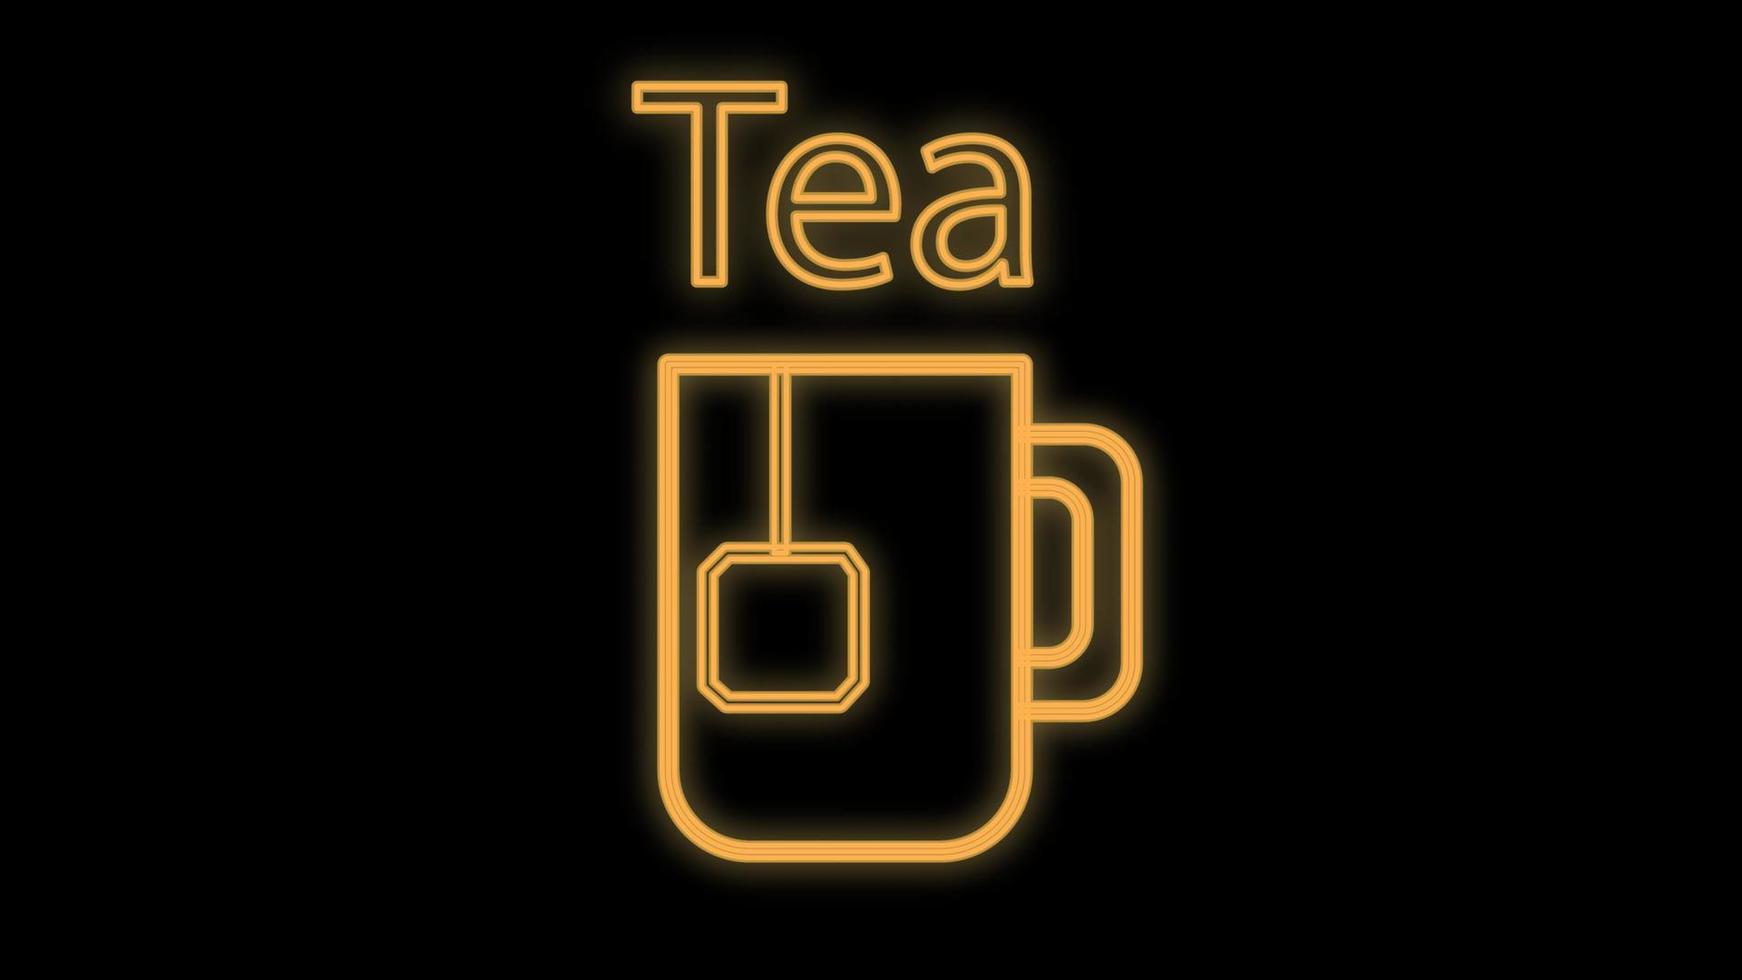 caneca de chá com um saquinho de chá dentro em um fundo preto, ilustração vetorial, neon. chá com um saquinho de chá descartável. sinal de neon em laranja. placa brilhante com o chá de inscrição para uma cafeteria vetor